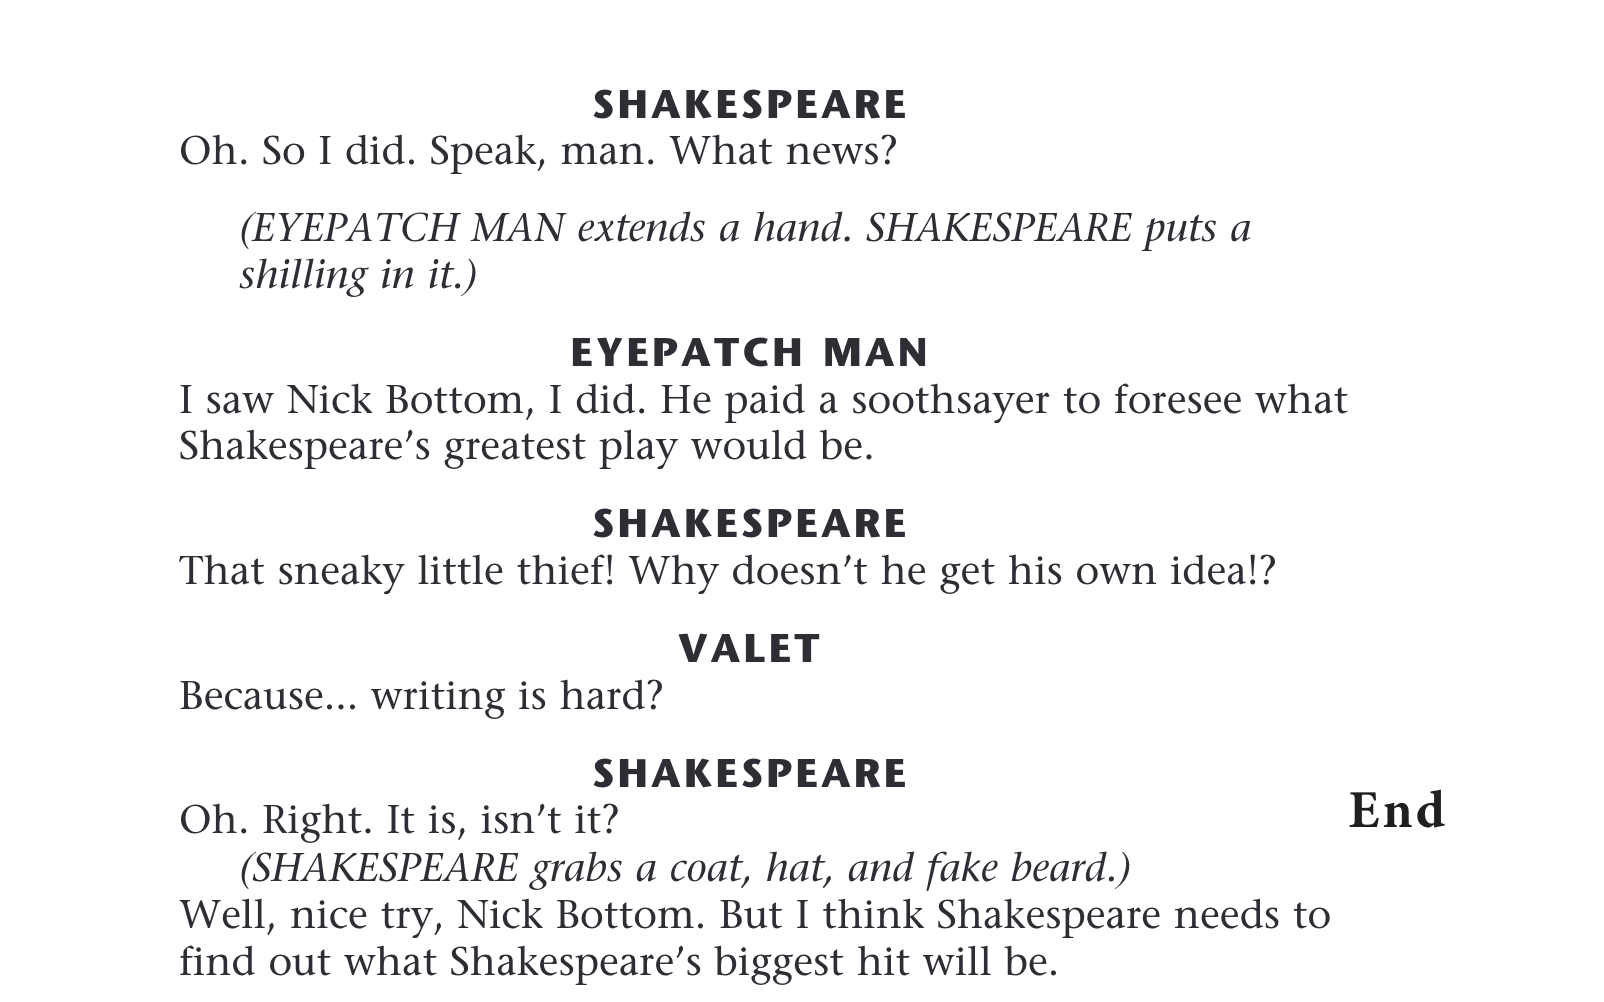 Shakespeare, Eyepatch Man, Valet Side 2